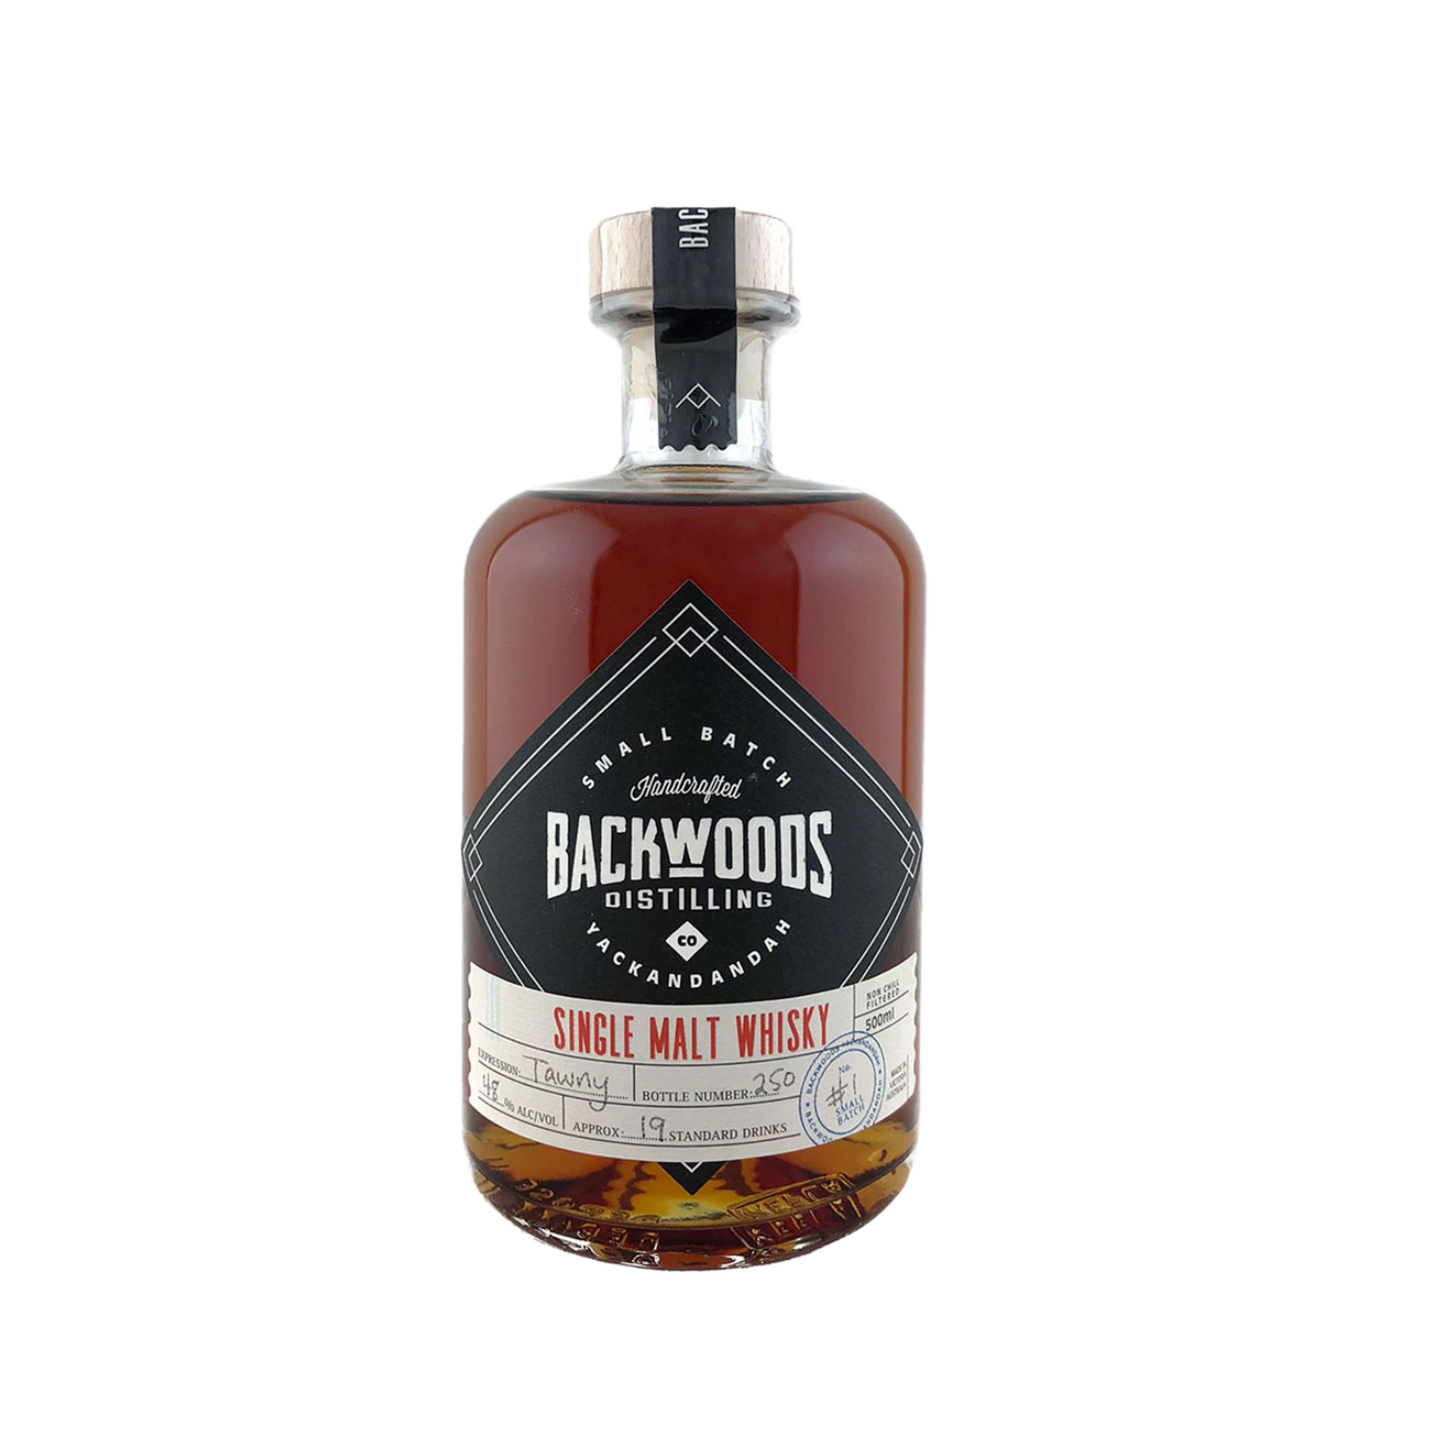 Backwoods Distilling Co. 'Single Malt Batch #1 Tawny Cask' Various Size Samples